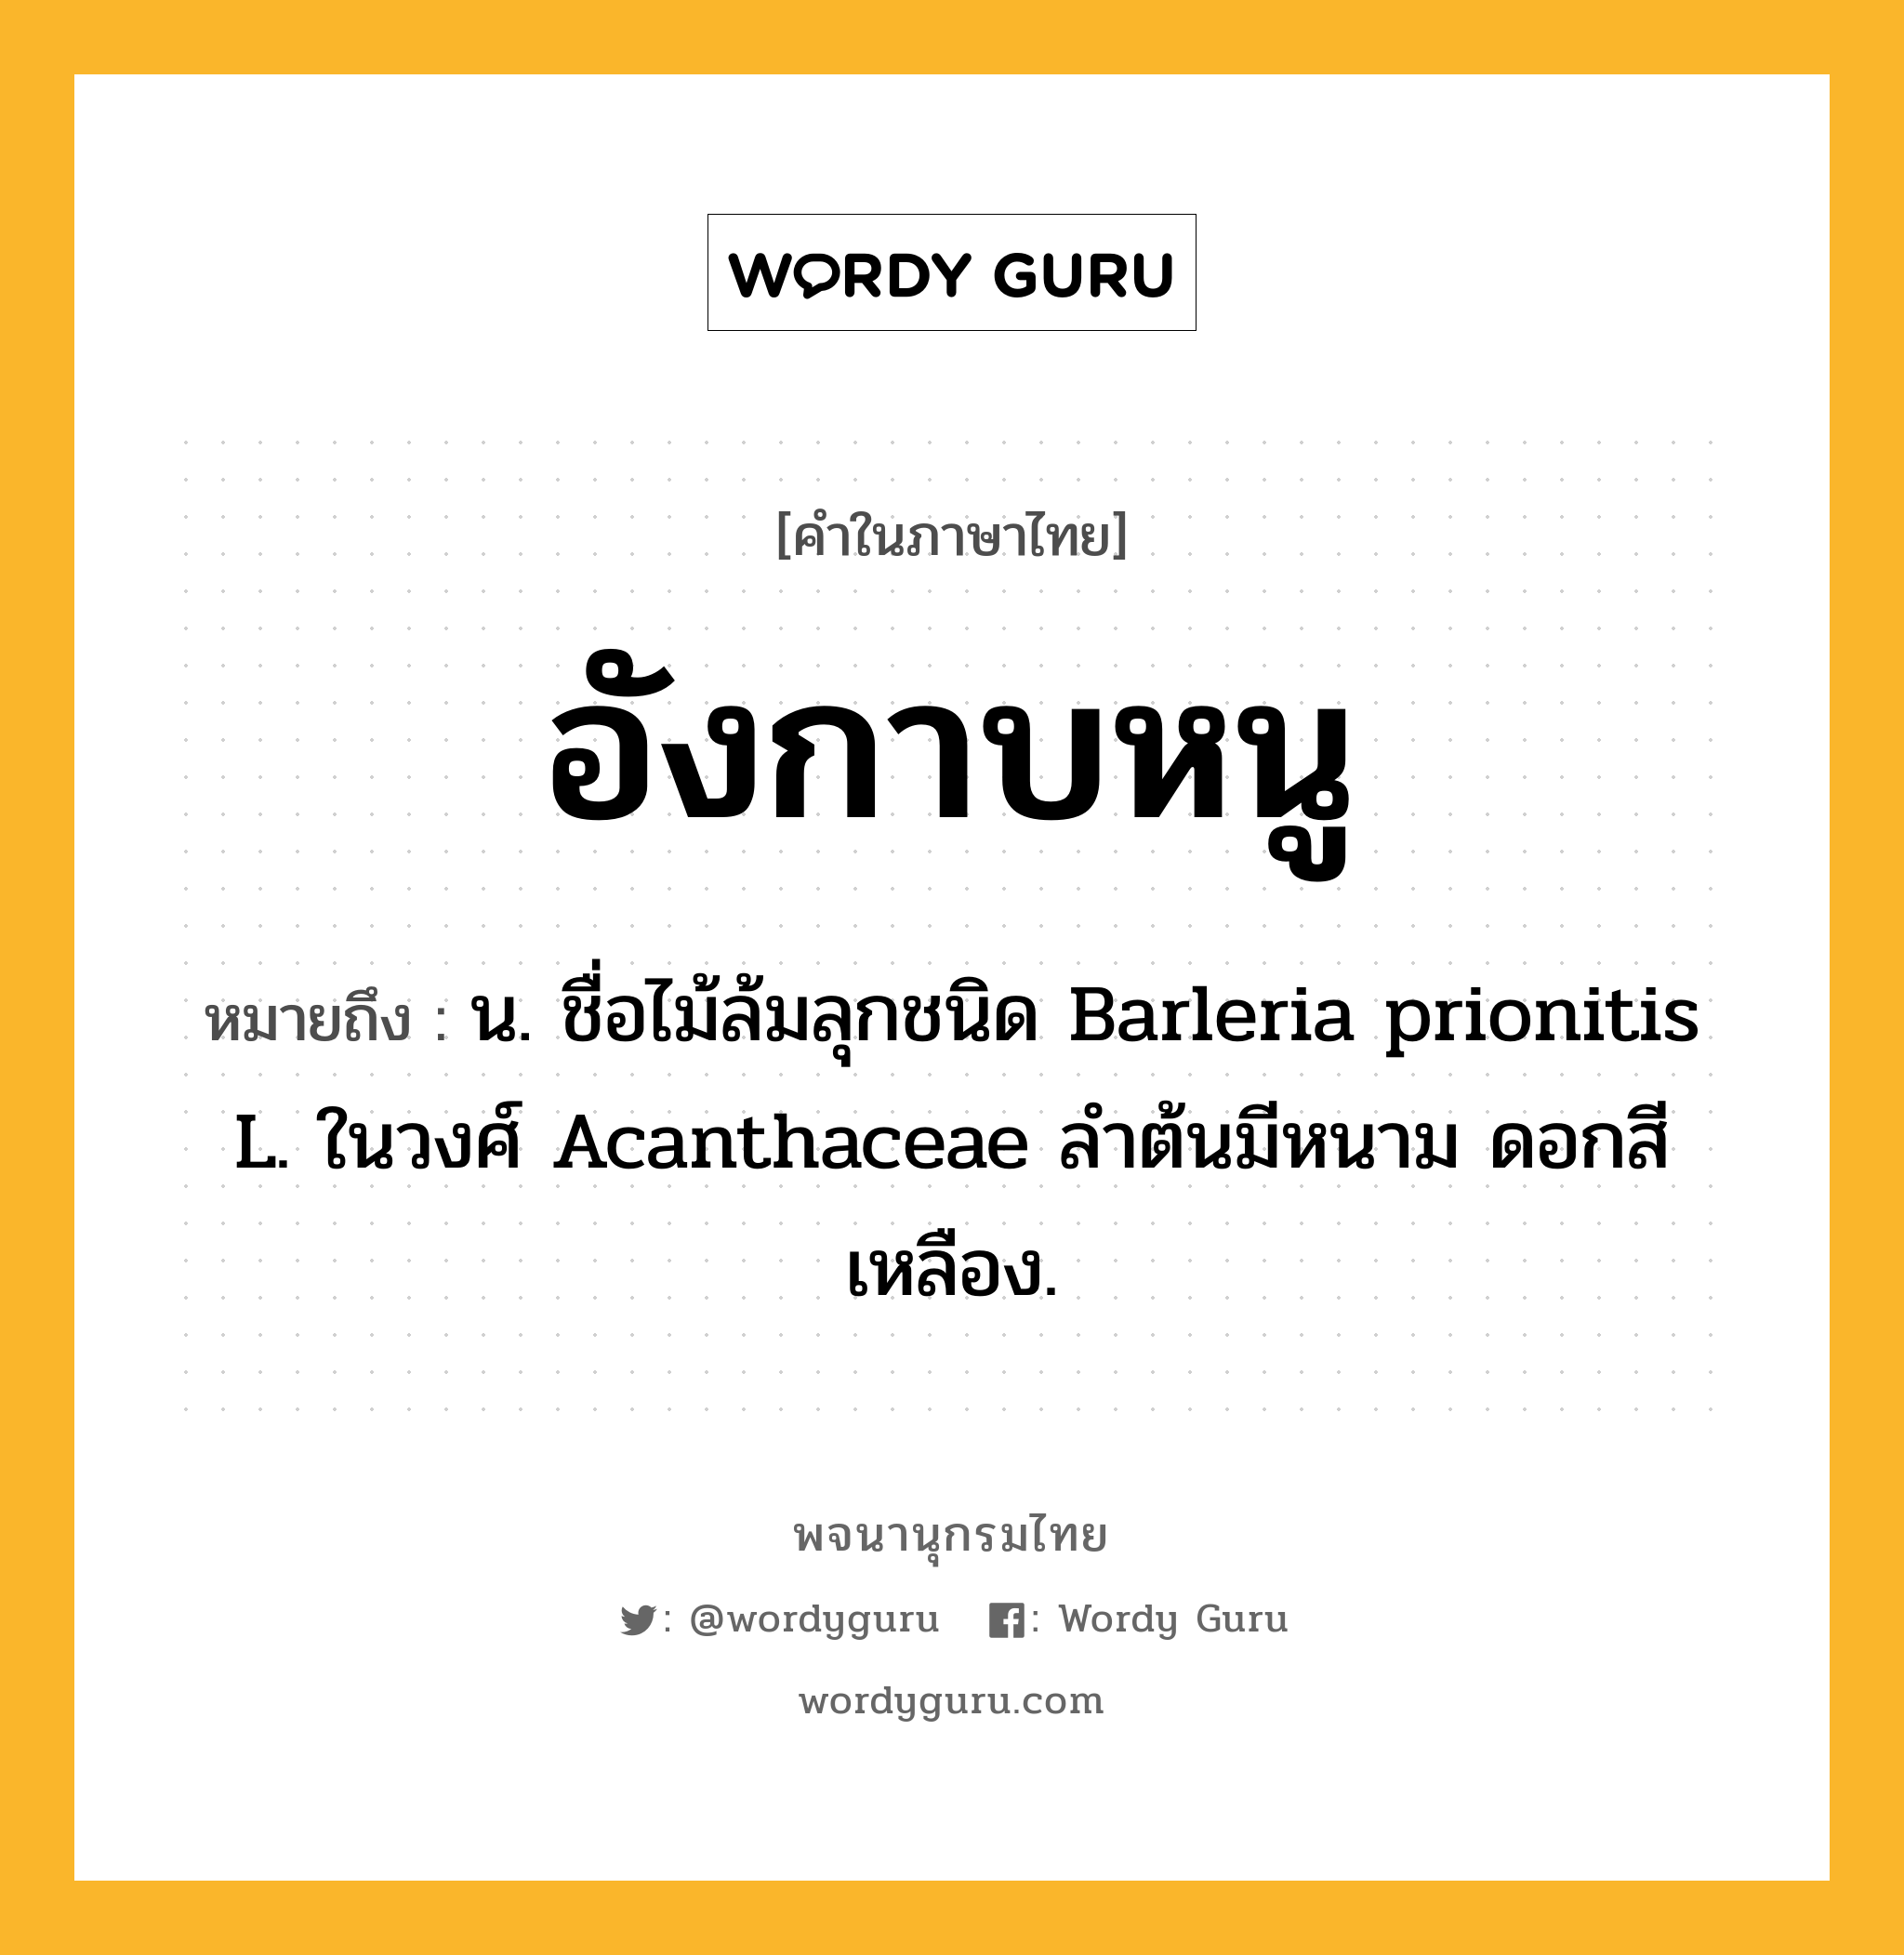 อังกาบหนู หมายถึงอะไร?, คำในภาษาไทย อังกาบหนู หมายถึง น. ชื่อไม้ล้มลุกชนิด Barleria prionitis L. ในวงศ์ Acanthaceae ลําต้นมีหนาม ดอกสีเหลือง.